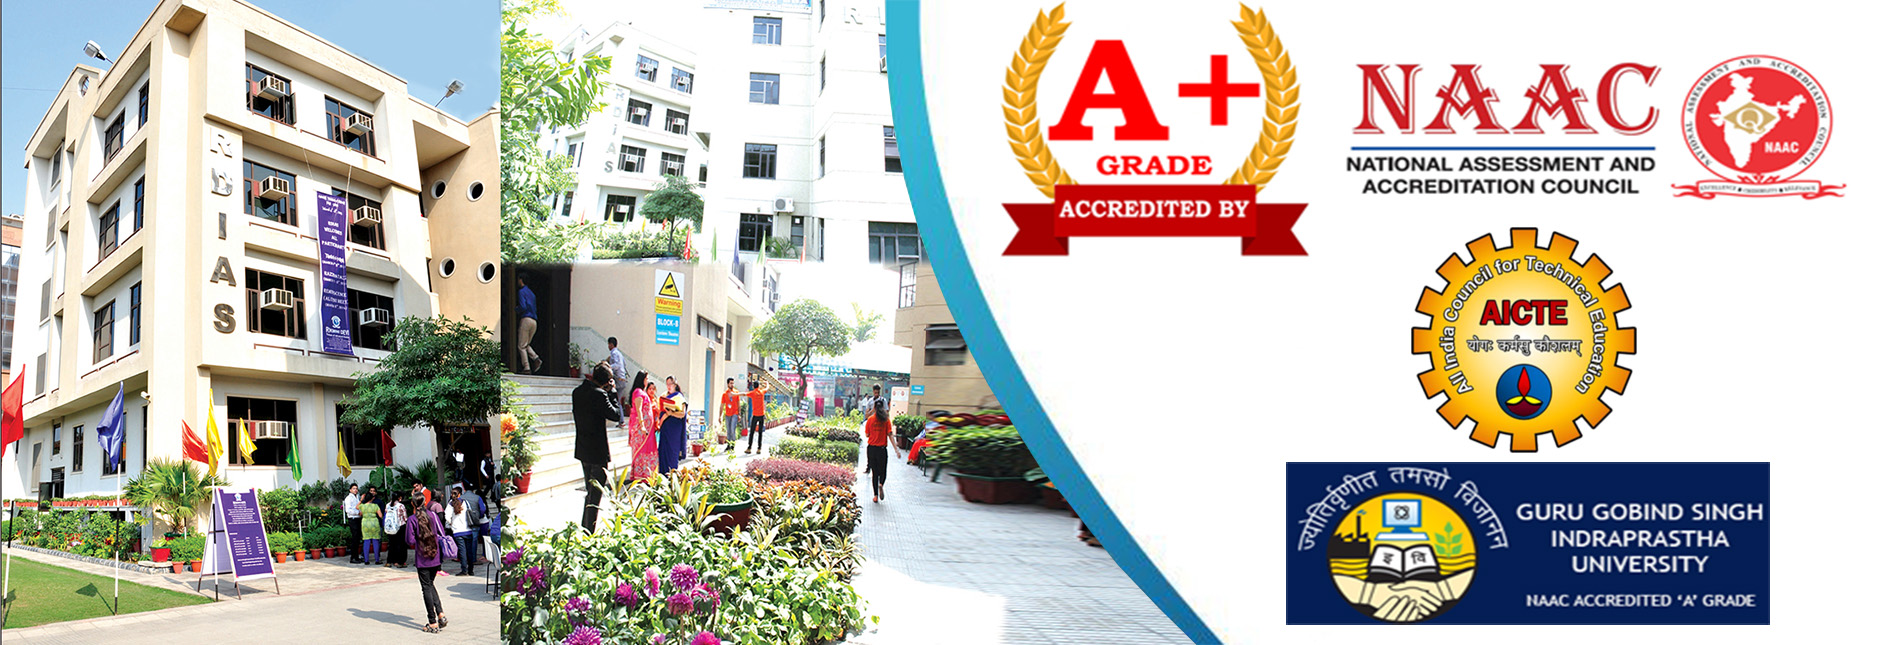 MBA BBA Colleges in GGSIPU Delhi - Rukmini Devi Institute of Advanced Studies - RDIAS